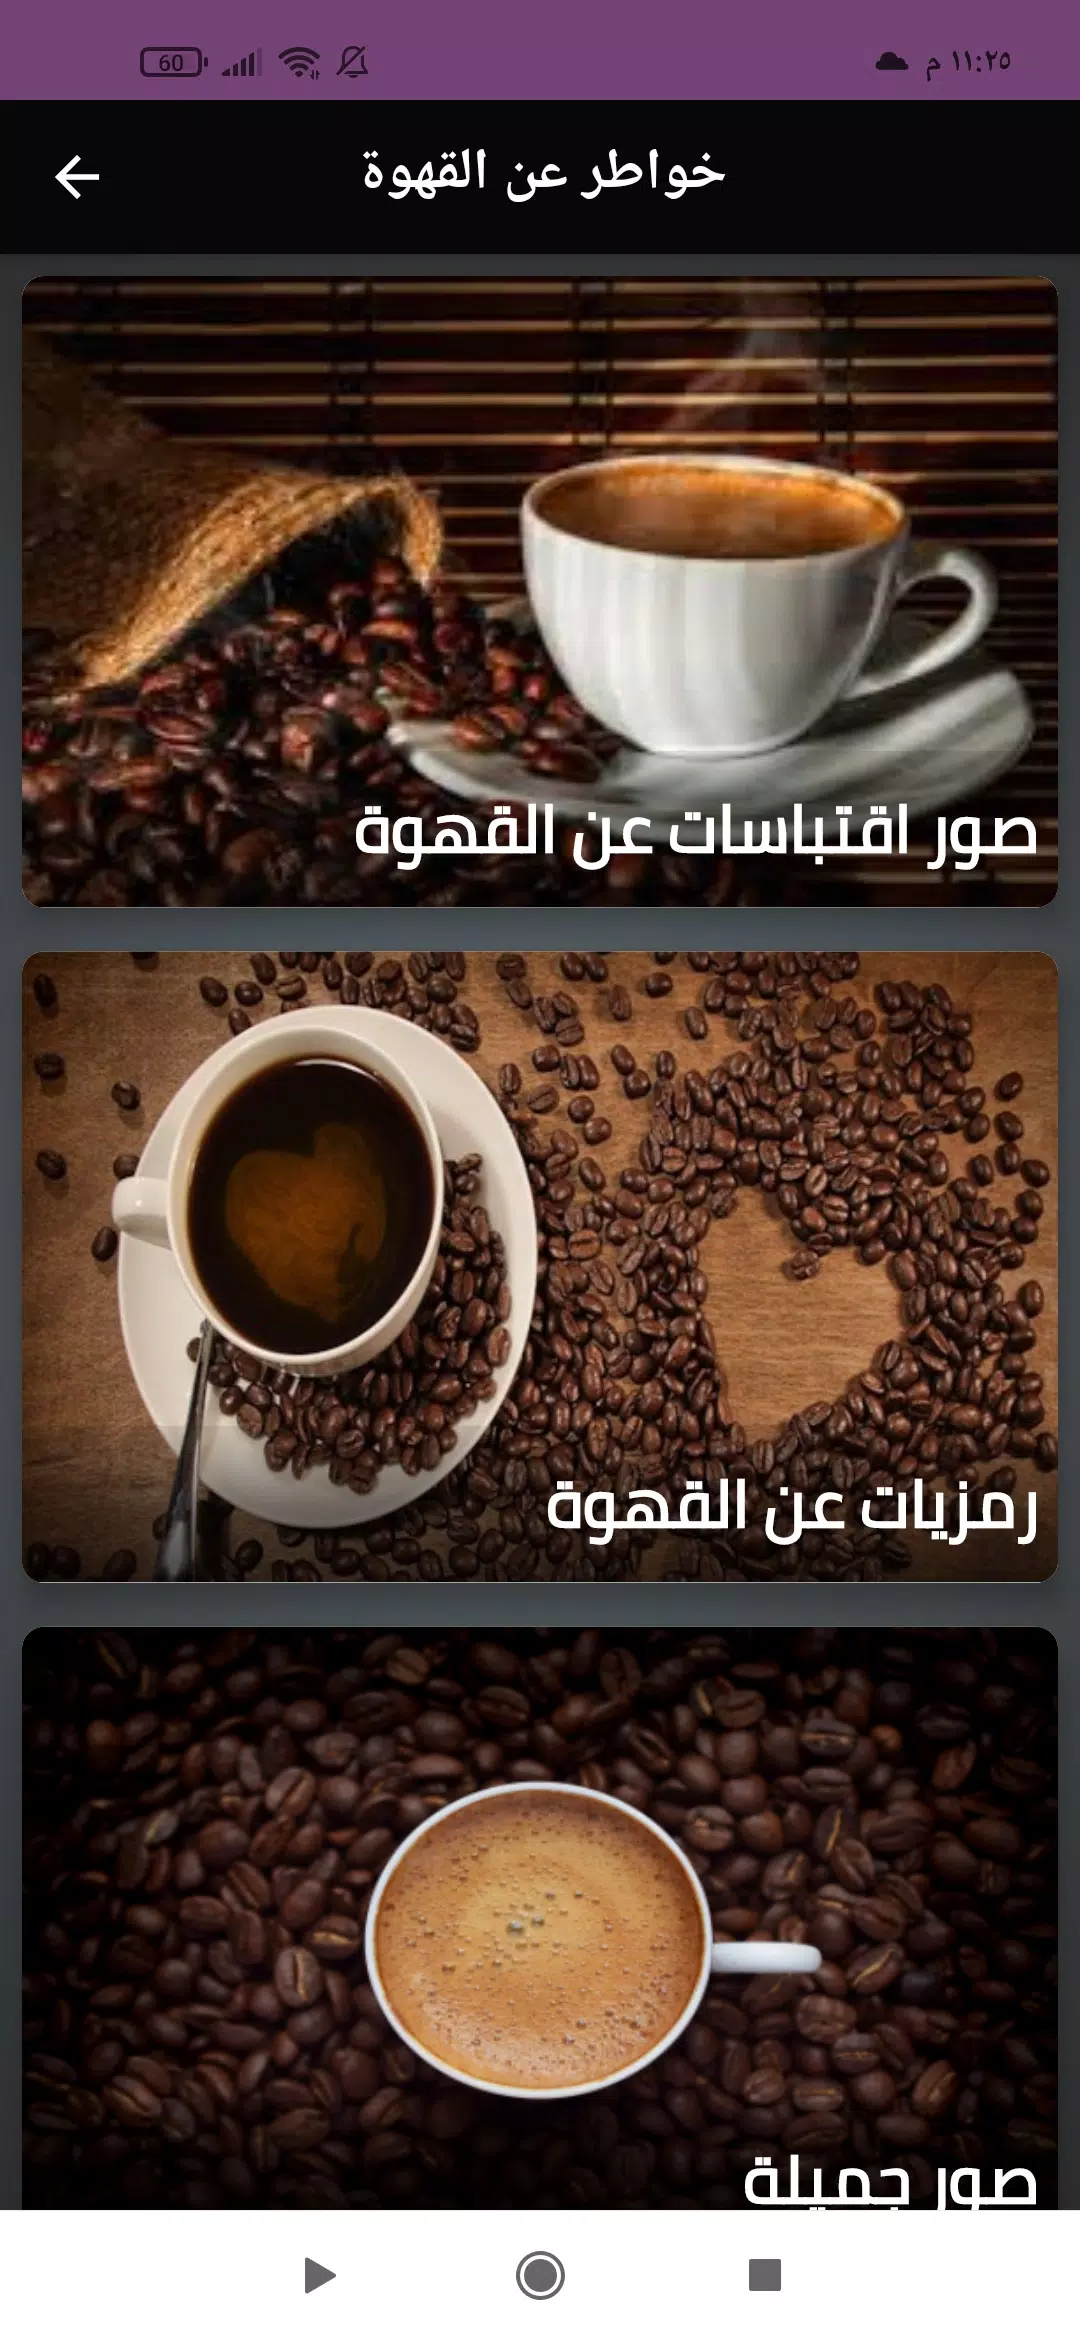 عبارات عن القهوة قصيرة